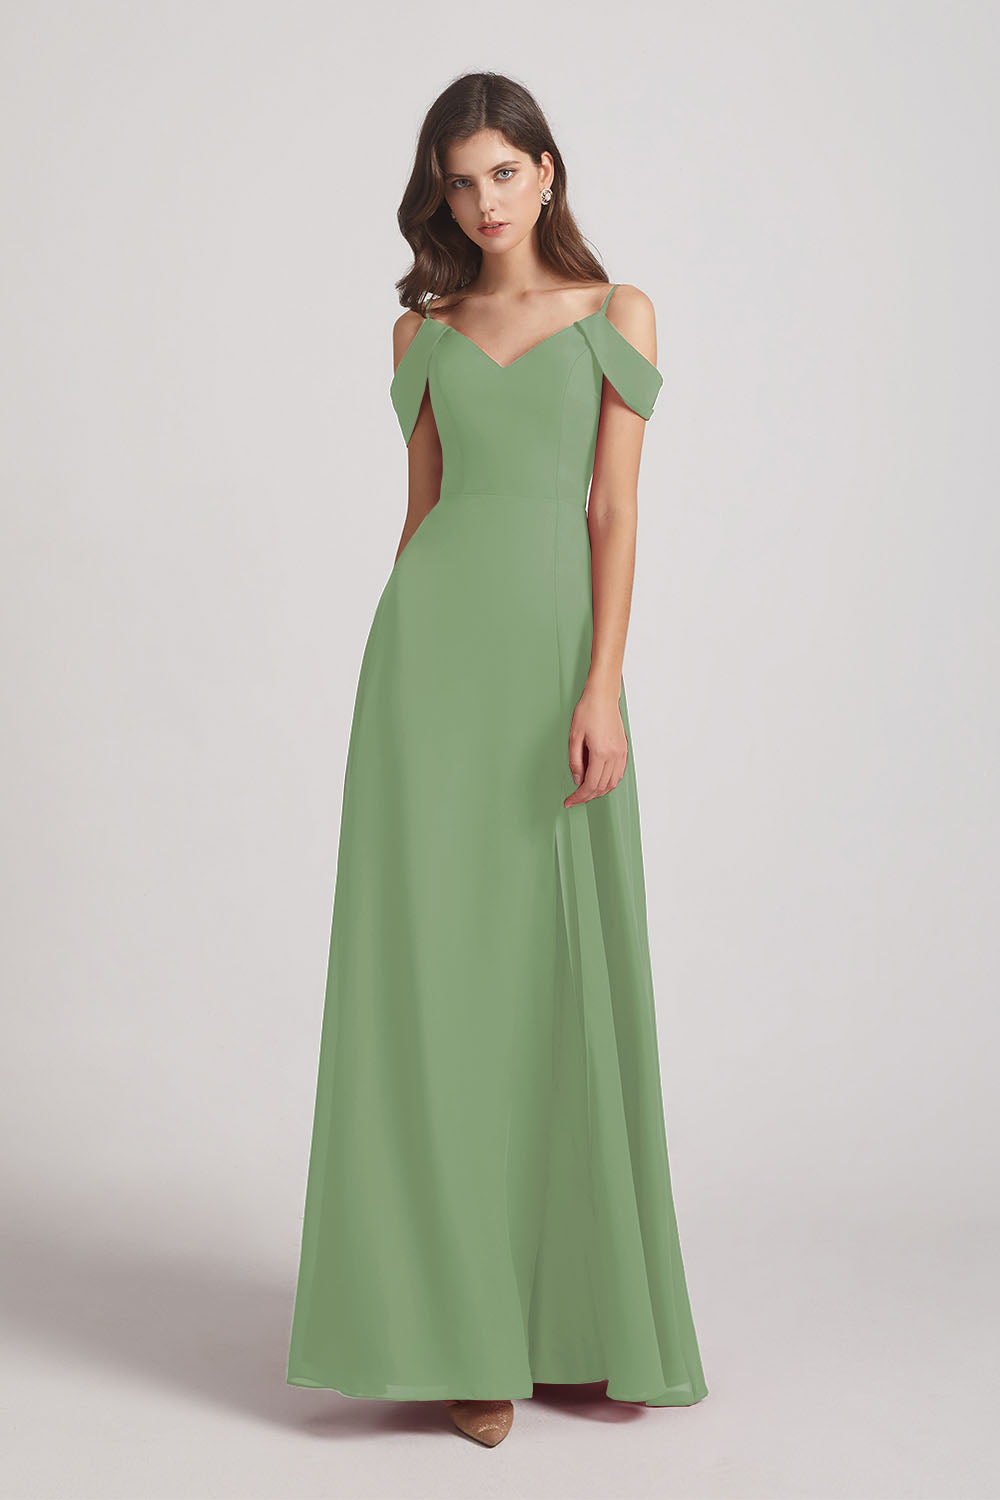 Alfa Bridal Seagrass Chiffon Cold Shoulder V-Neck Bridesmaid Dresses with Slit (AF0093)